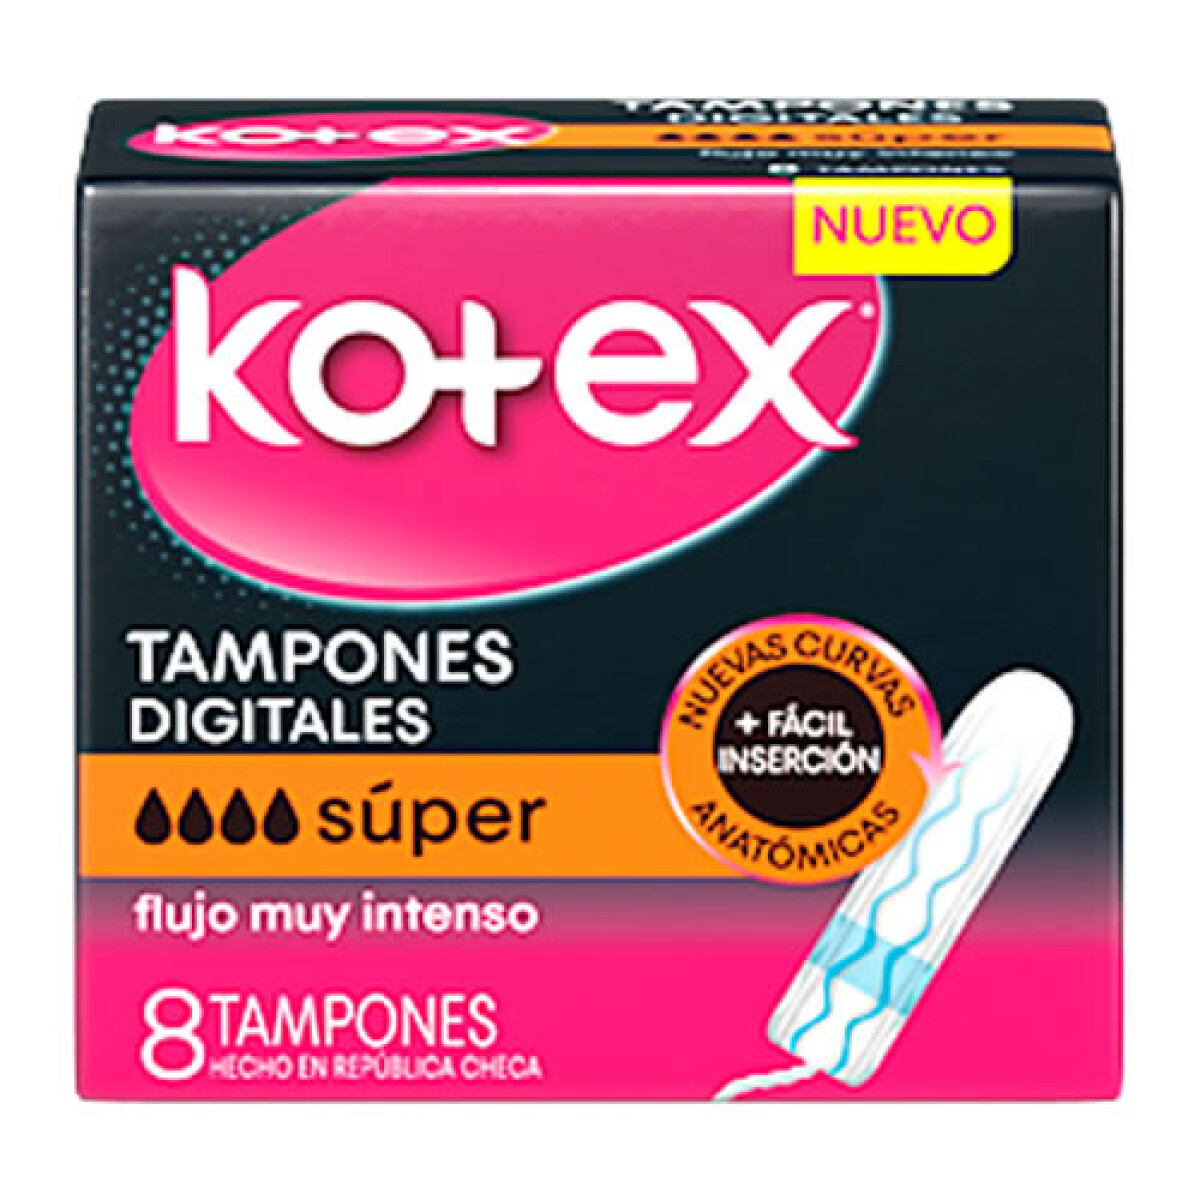 TAMPONES KOTEX SUPER X8 